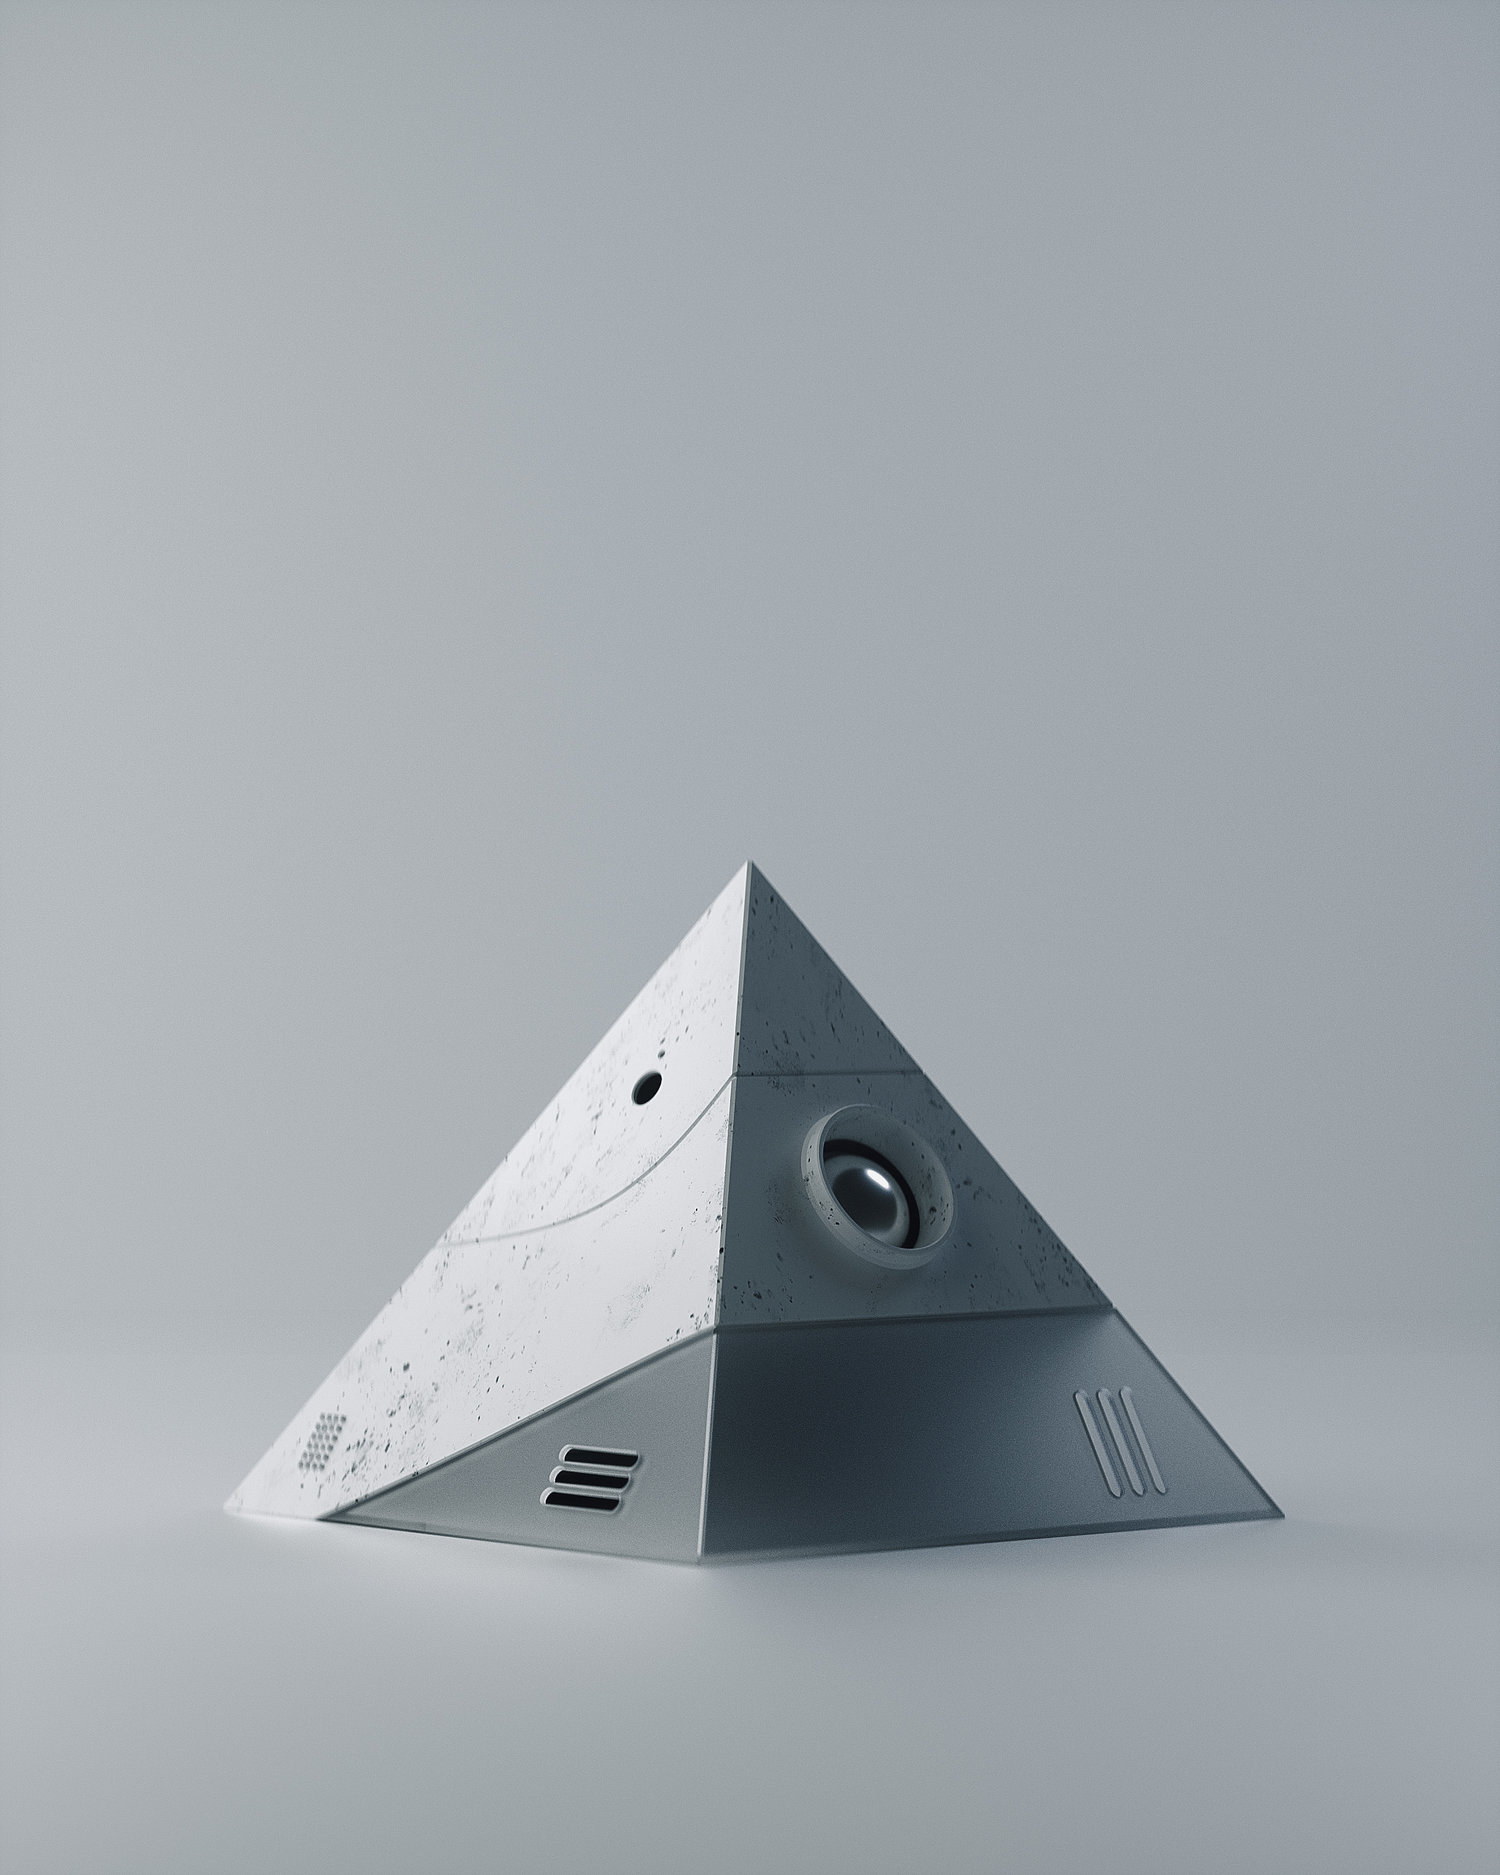 金字塔立体三角棱镜模型[17-12-17]-Prism.jpg